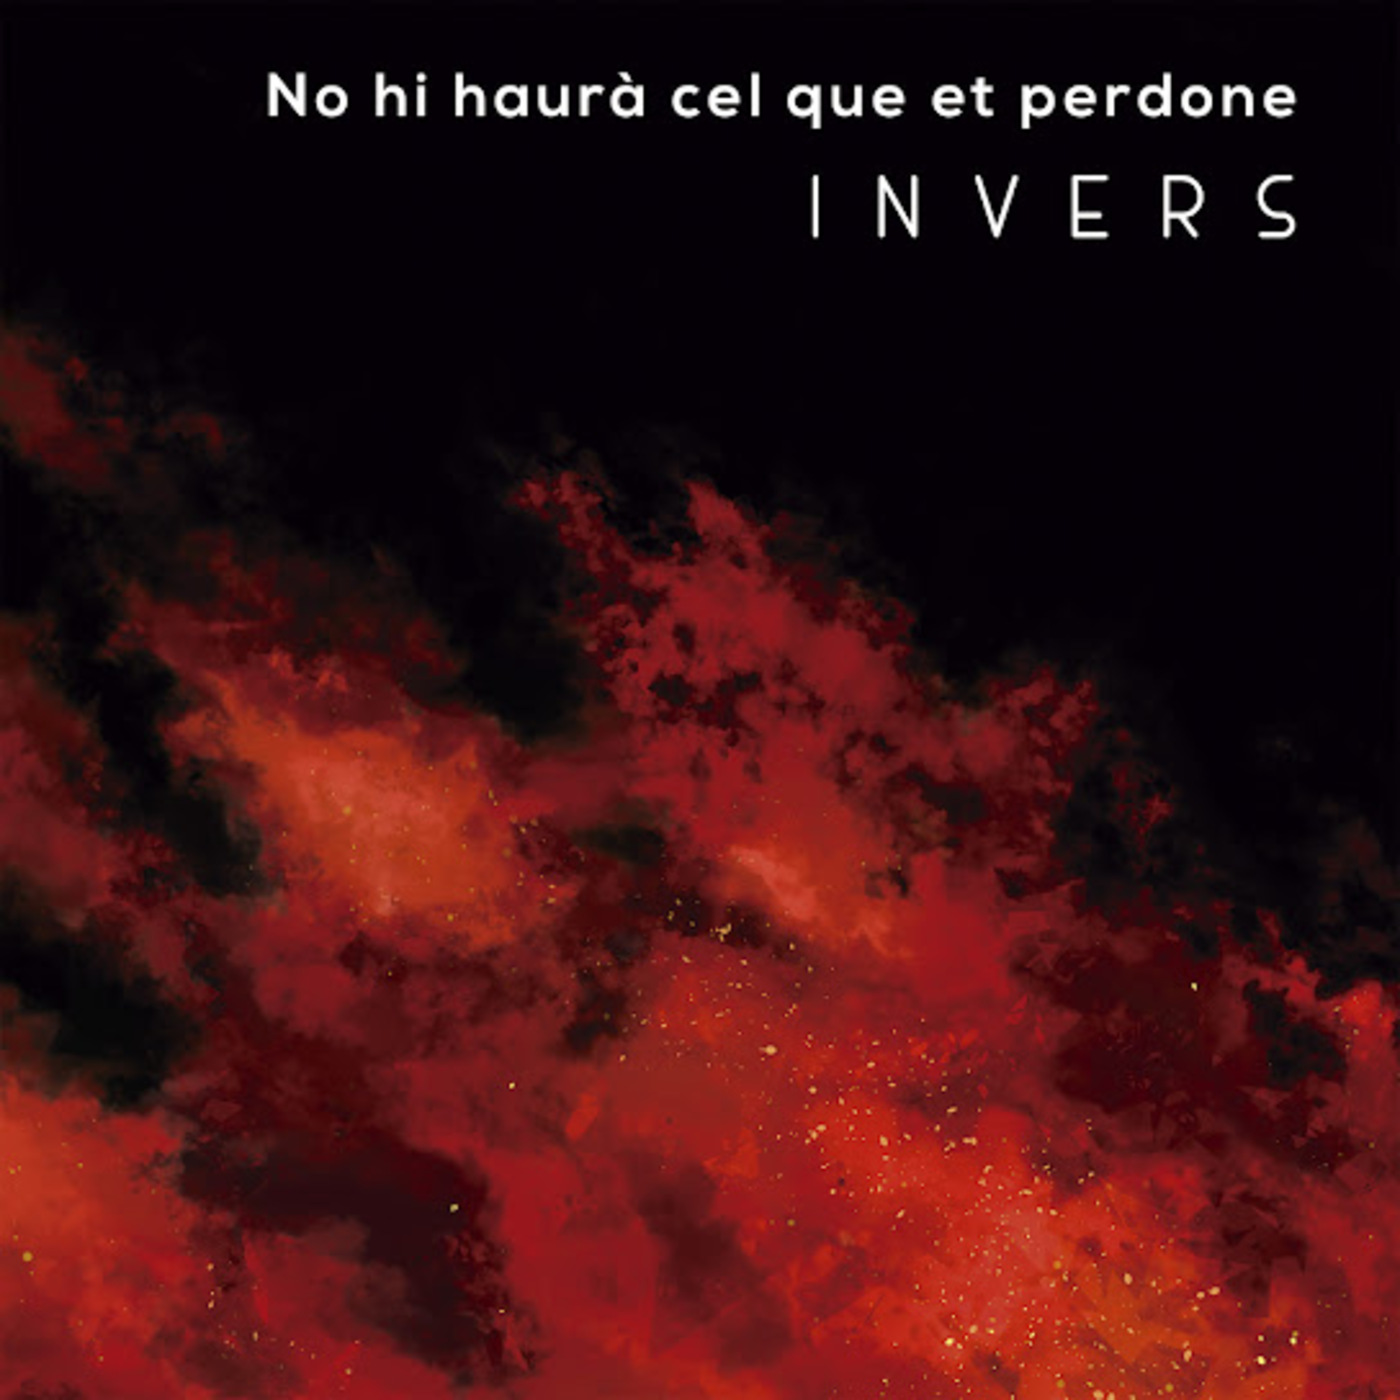 Invers - No hi haurà cel que et perdone | musica en valencià